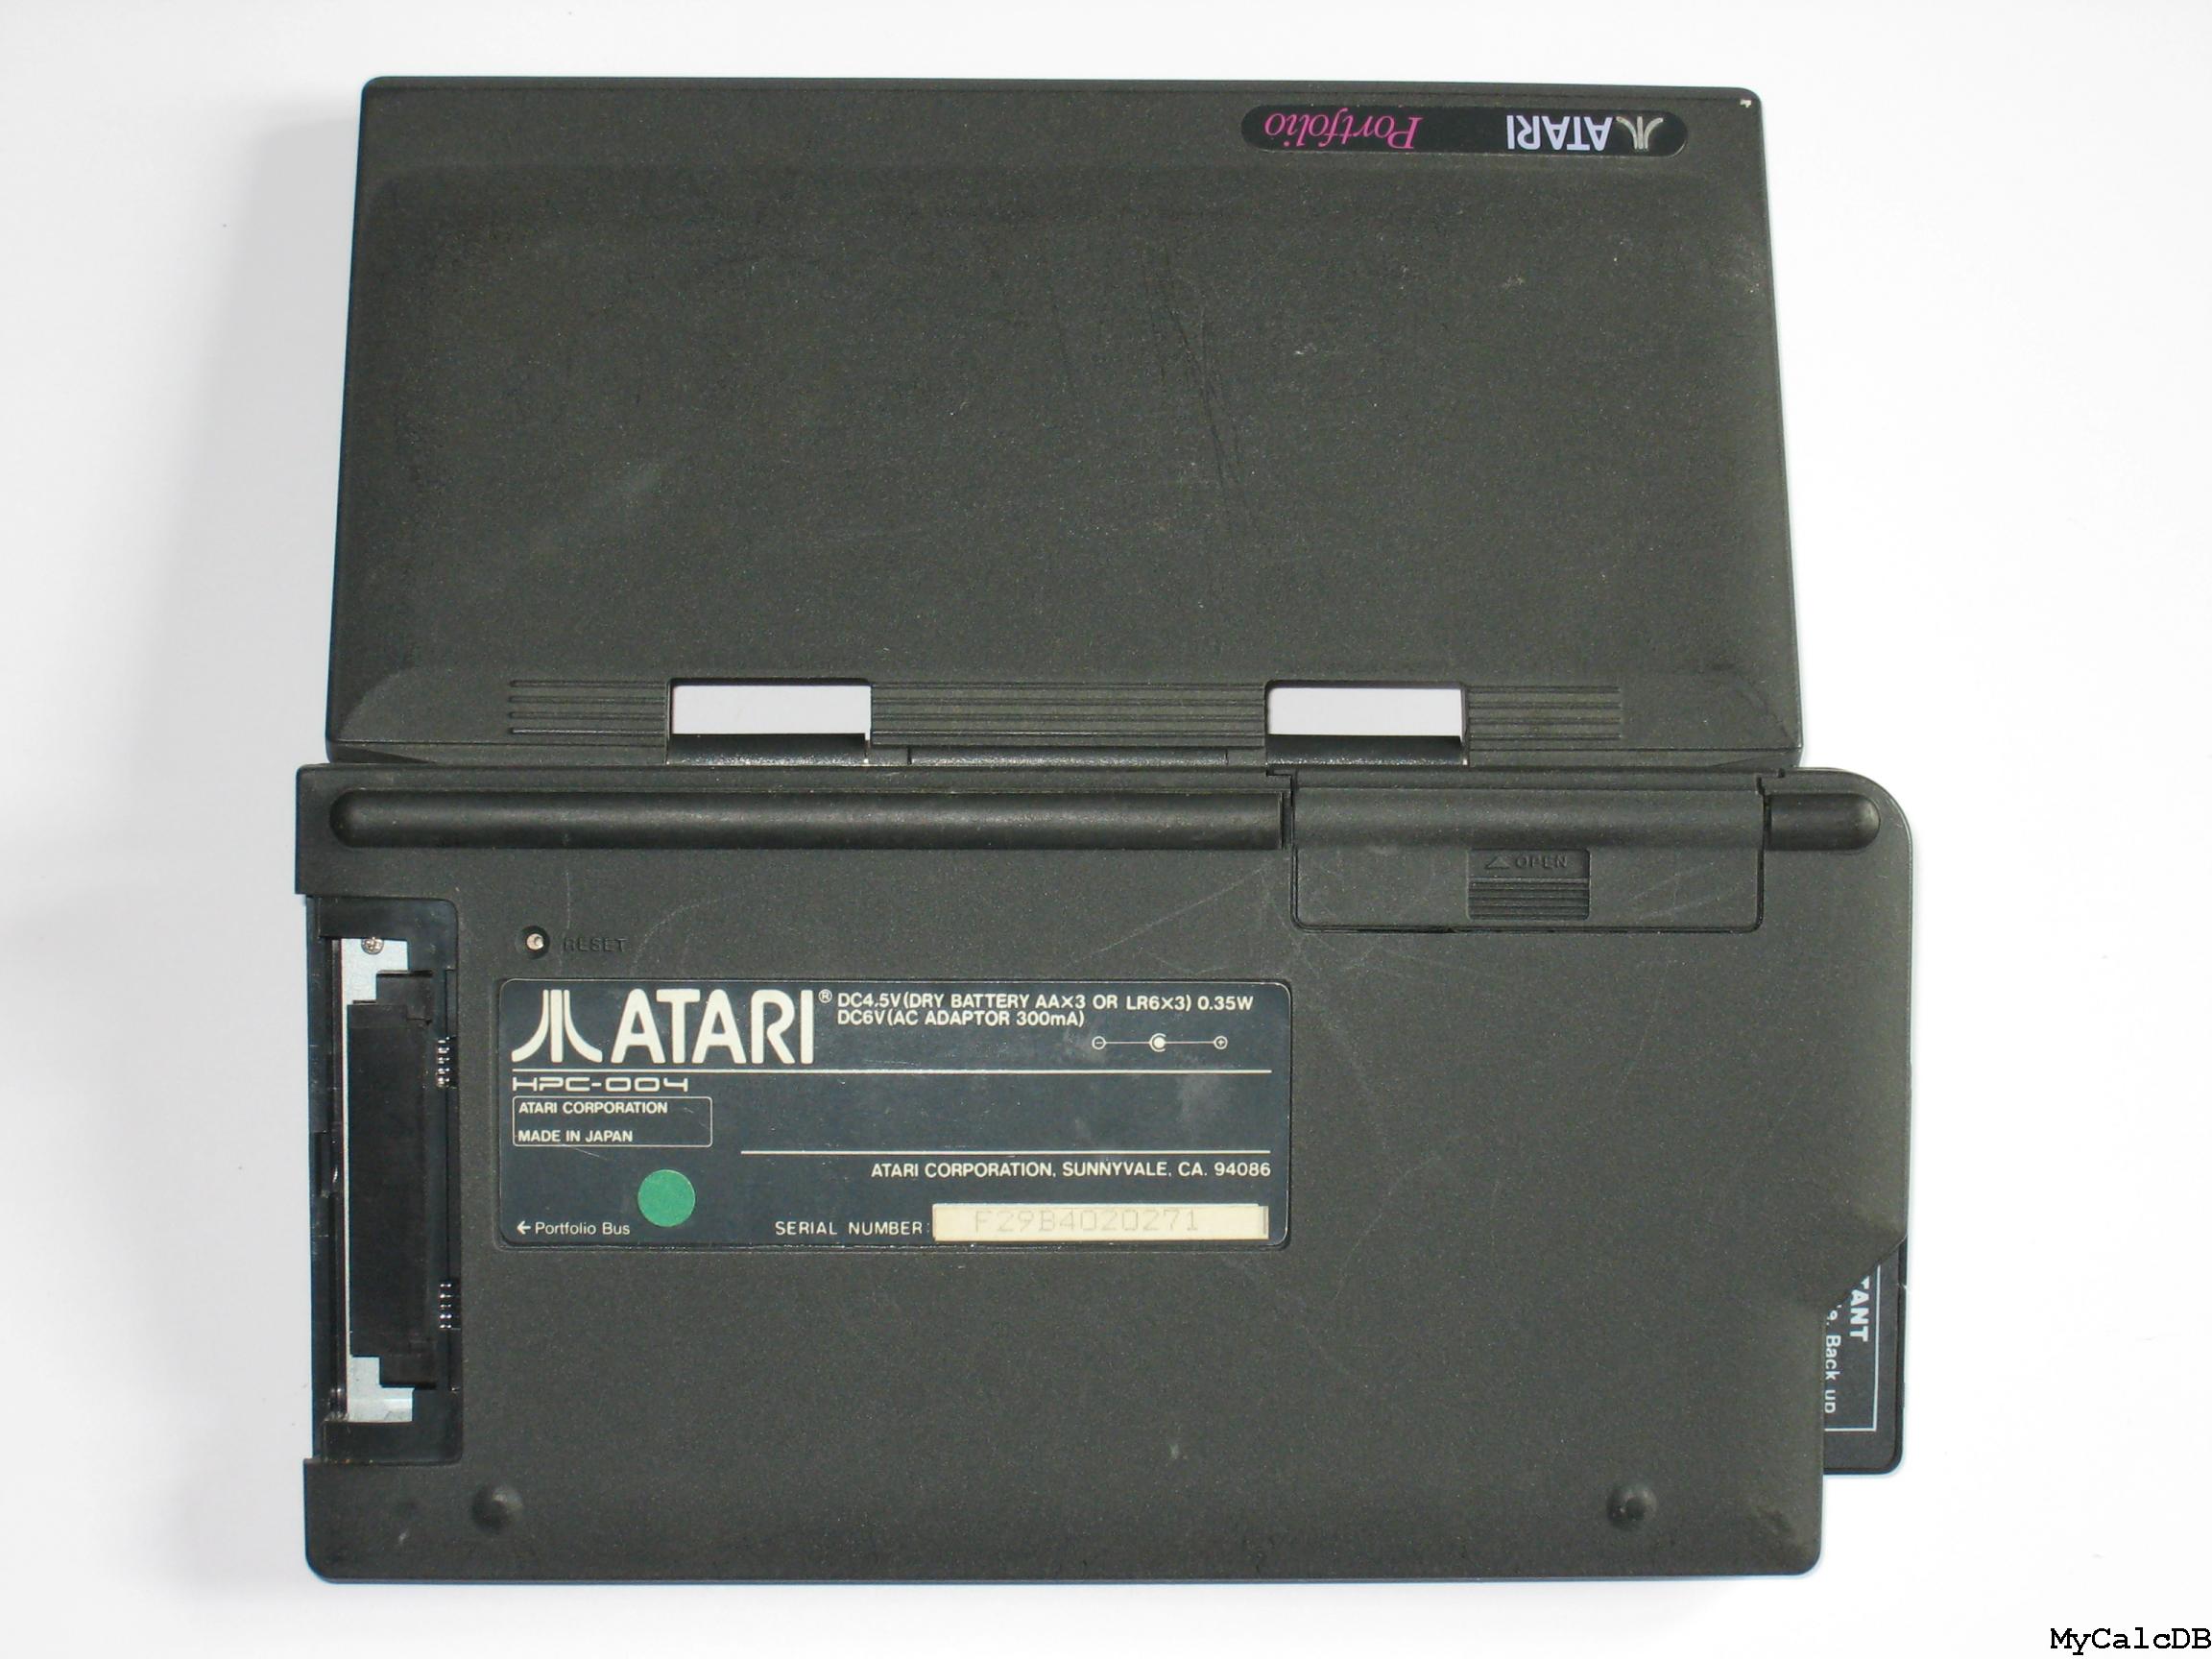 Atari Portfolio